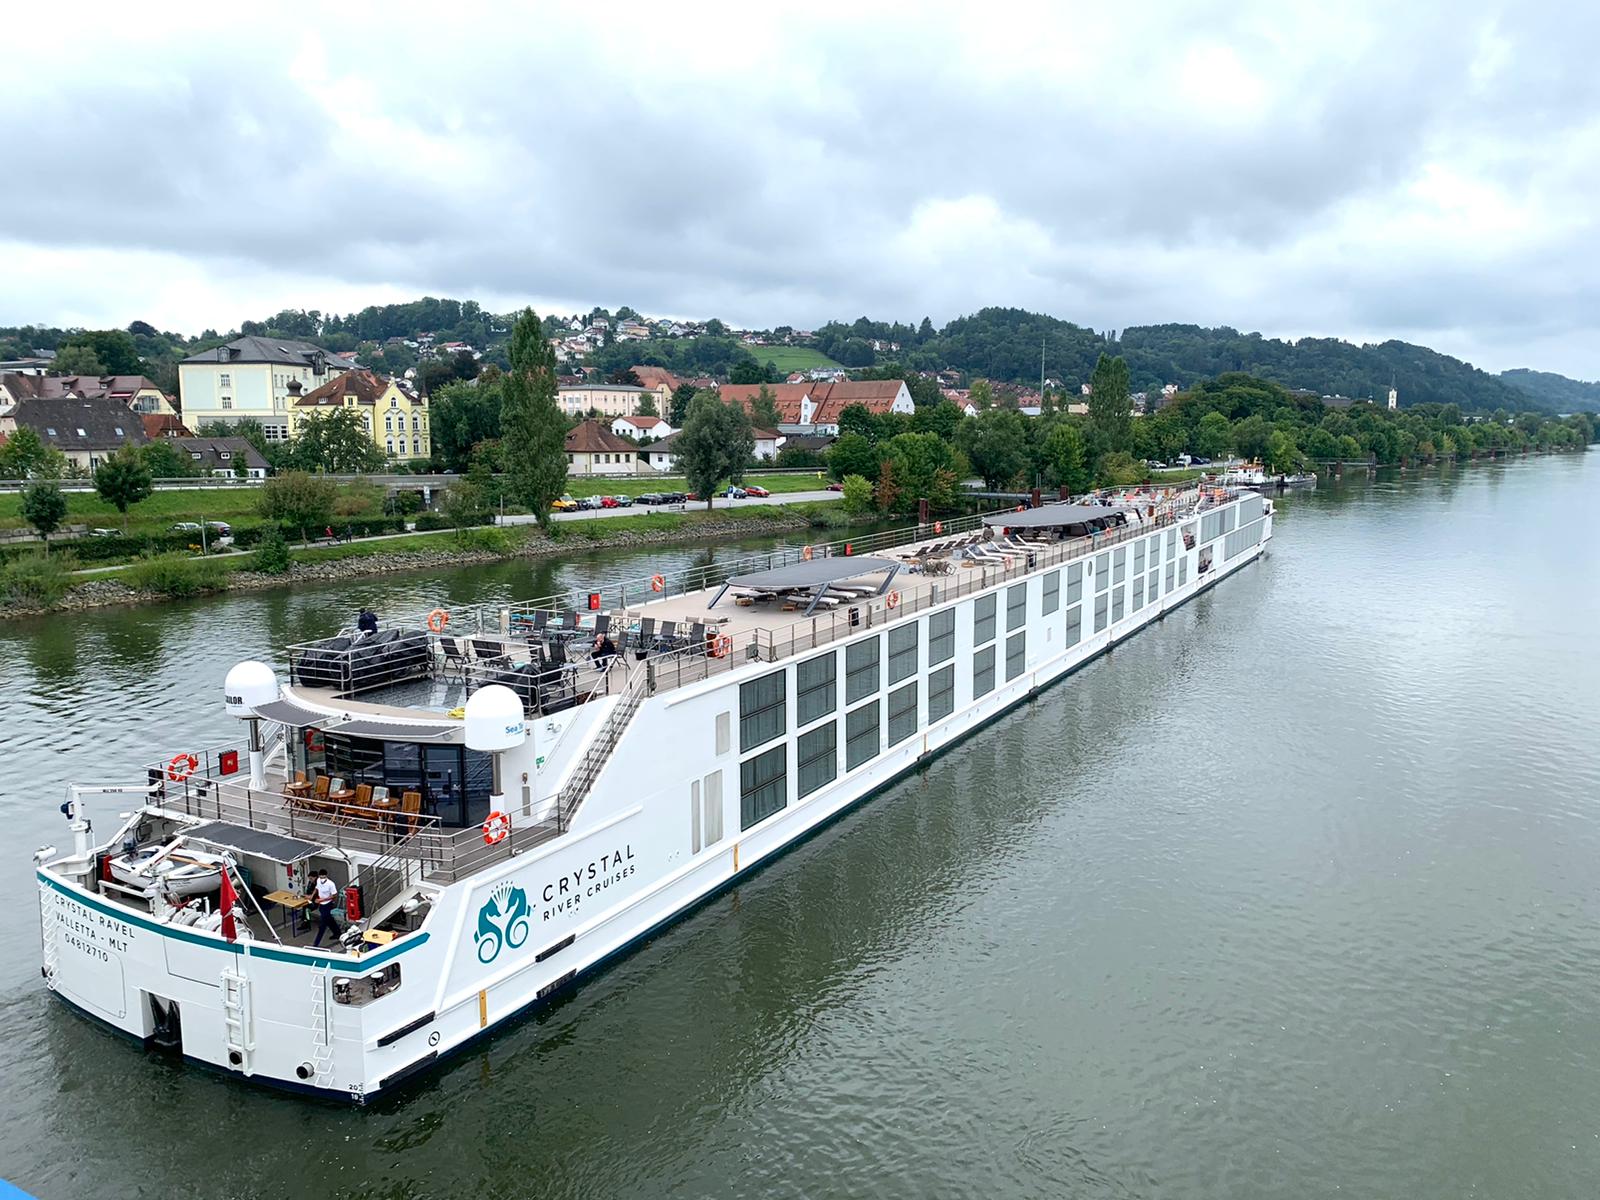 Crystal River Cruises celebra la reanudación de sus cruceros fluviales europeos